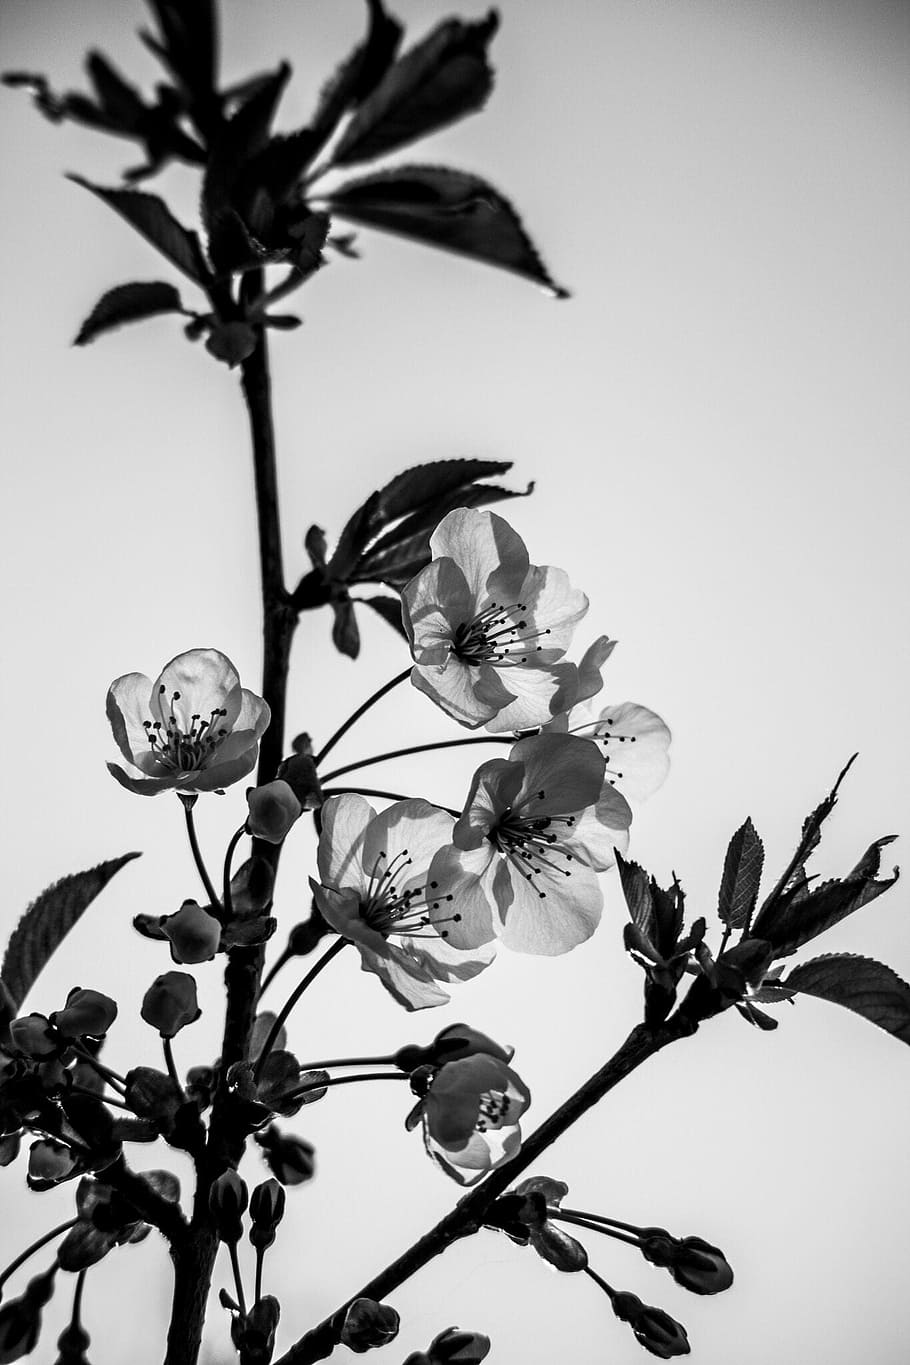 검정색과 흰색, 투명도, 꽃, 투명, 장식, 흰색, 검은 색, 식물, 성장, 꽃 피는 식물